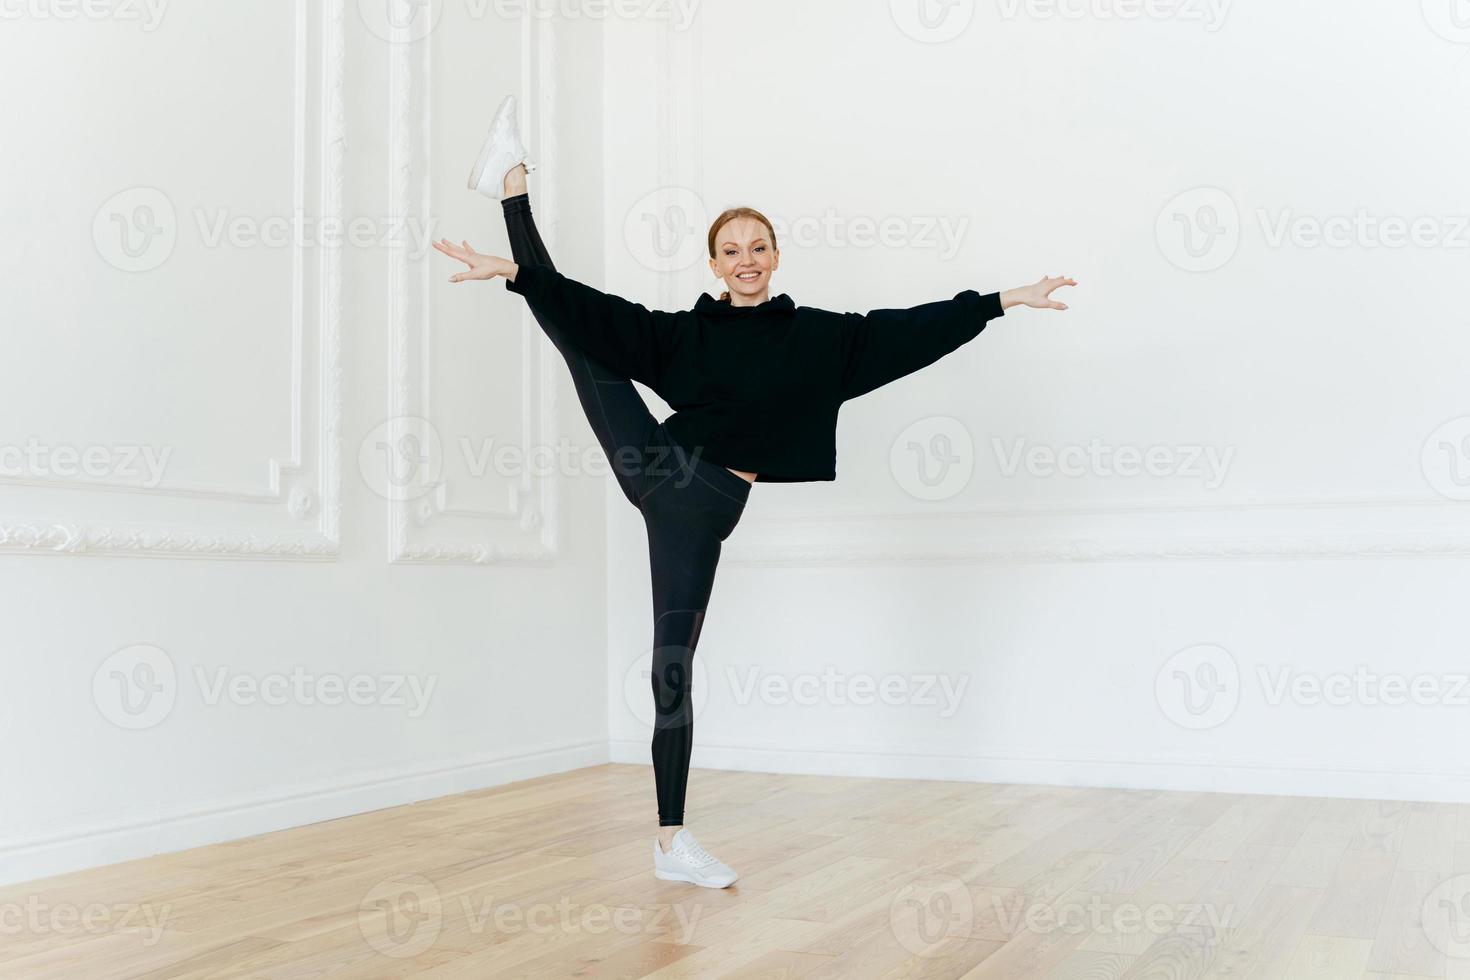 une ballerine satisfaite s'équilibre sur une jambe, s'étire en studio, pratique le yoga, fait preuve d'une bonne flexibilité, vêtue de vêtements noirs, a une expression heureuse, fait de l'exercice à l'intérieur. photo